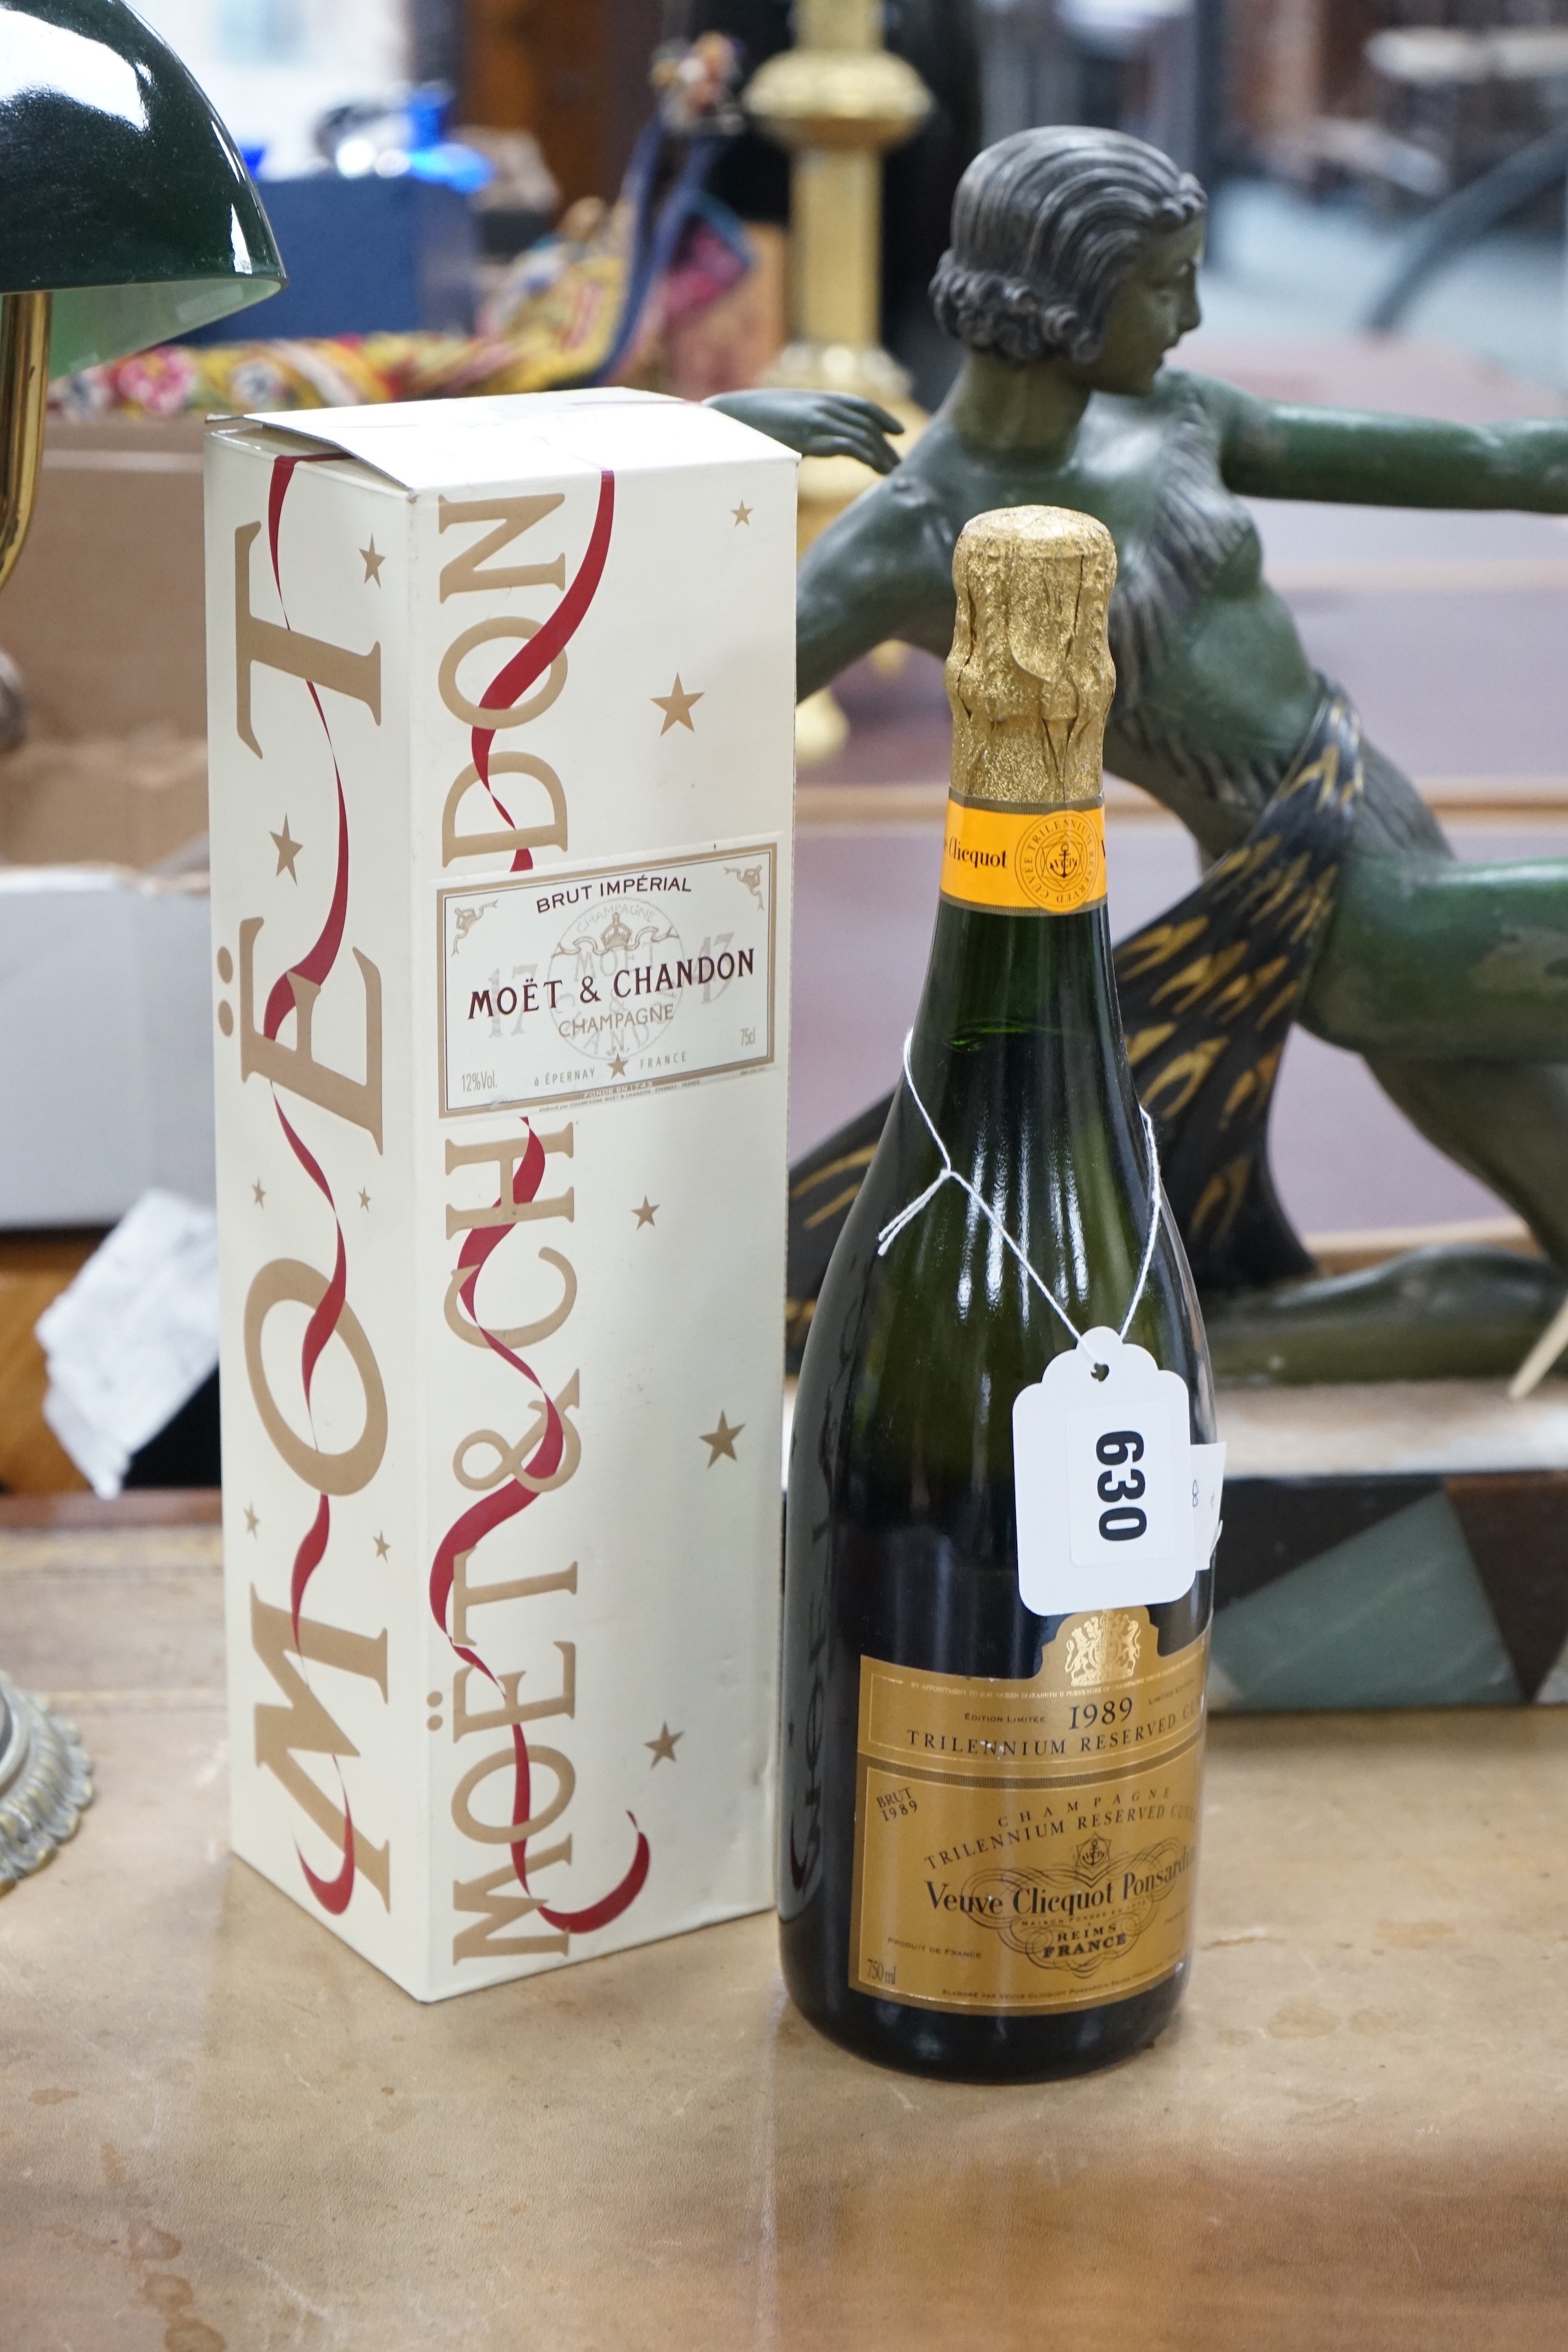 A 1989 bottle of Veuve Cliquot Ponsardin, together with a boxed bottle of Brut Moët & Chandon